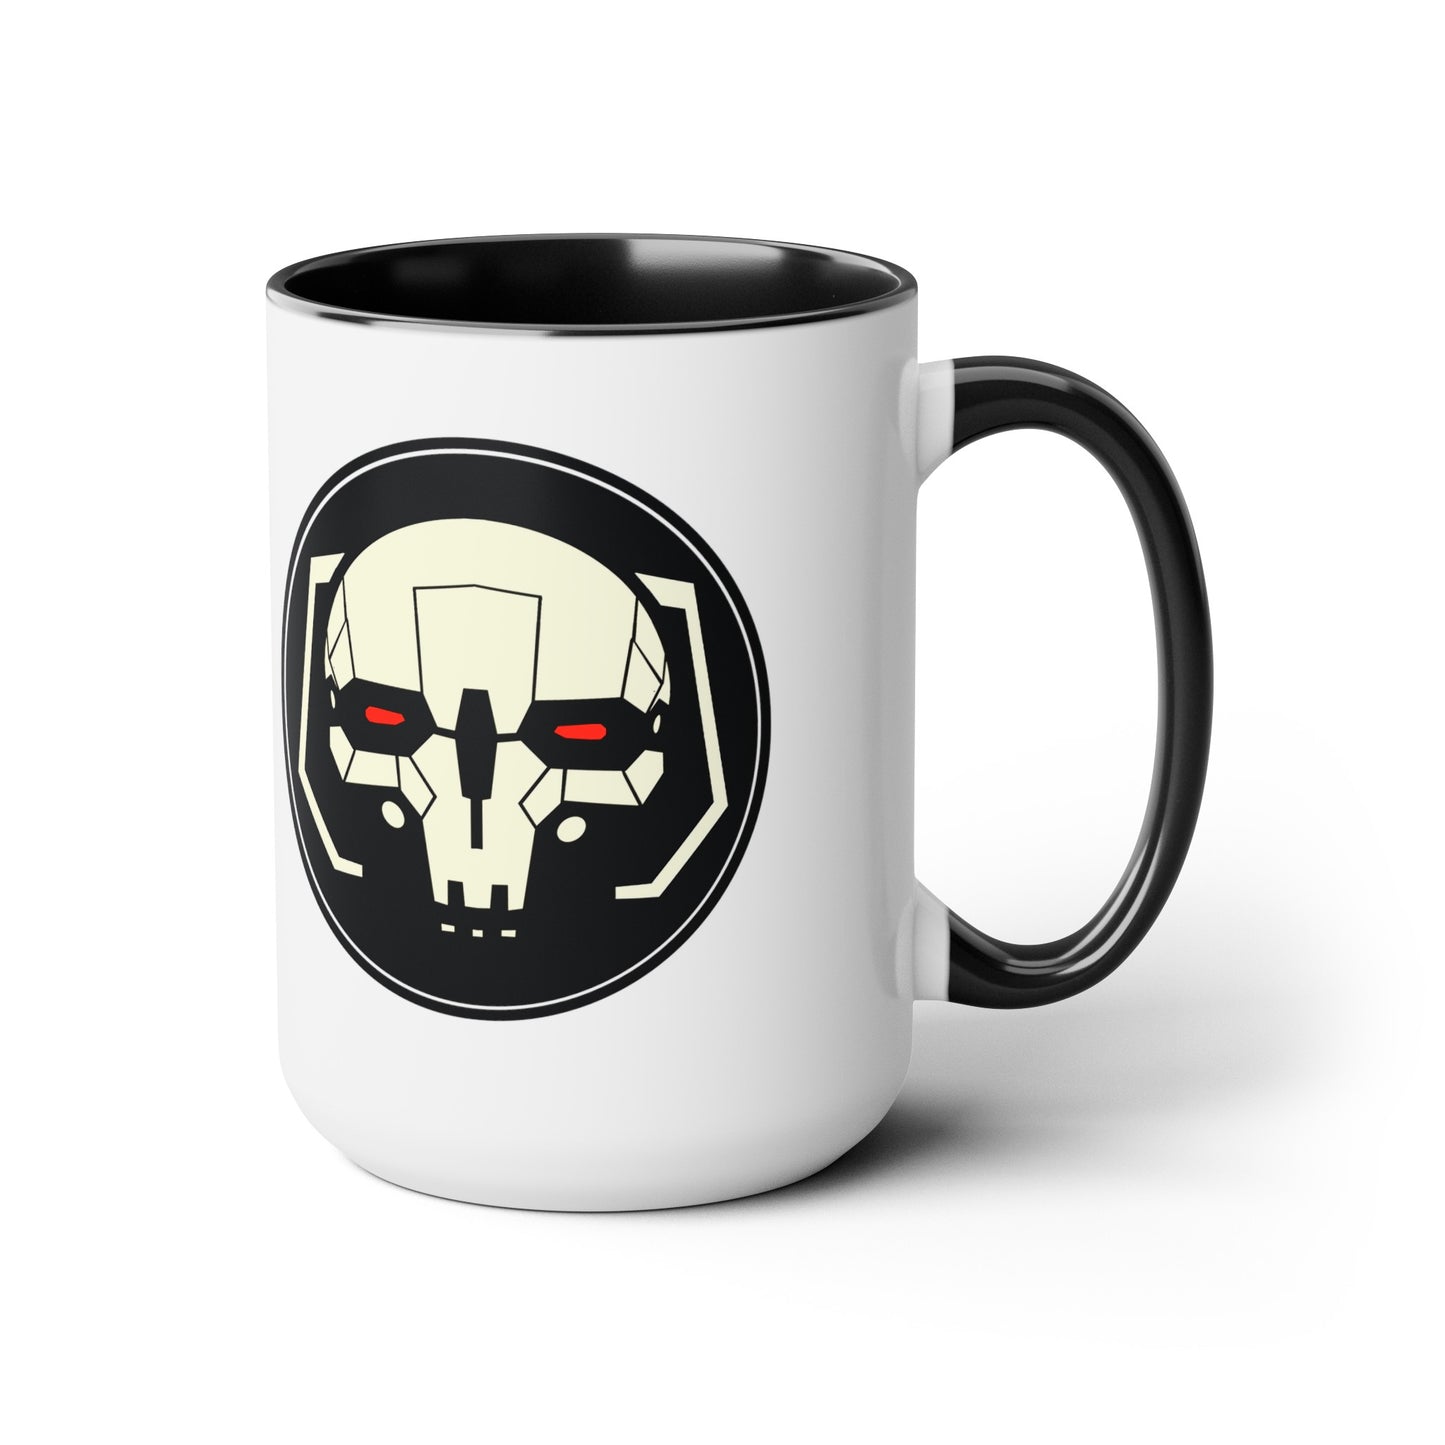 Skull Head Two-Tone Coffee Mug, 15oz